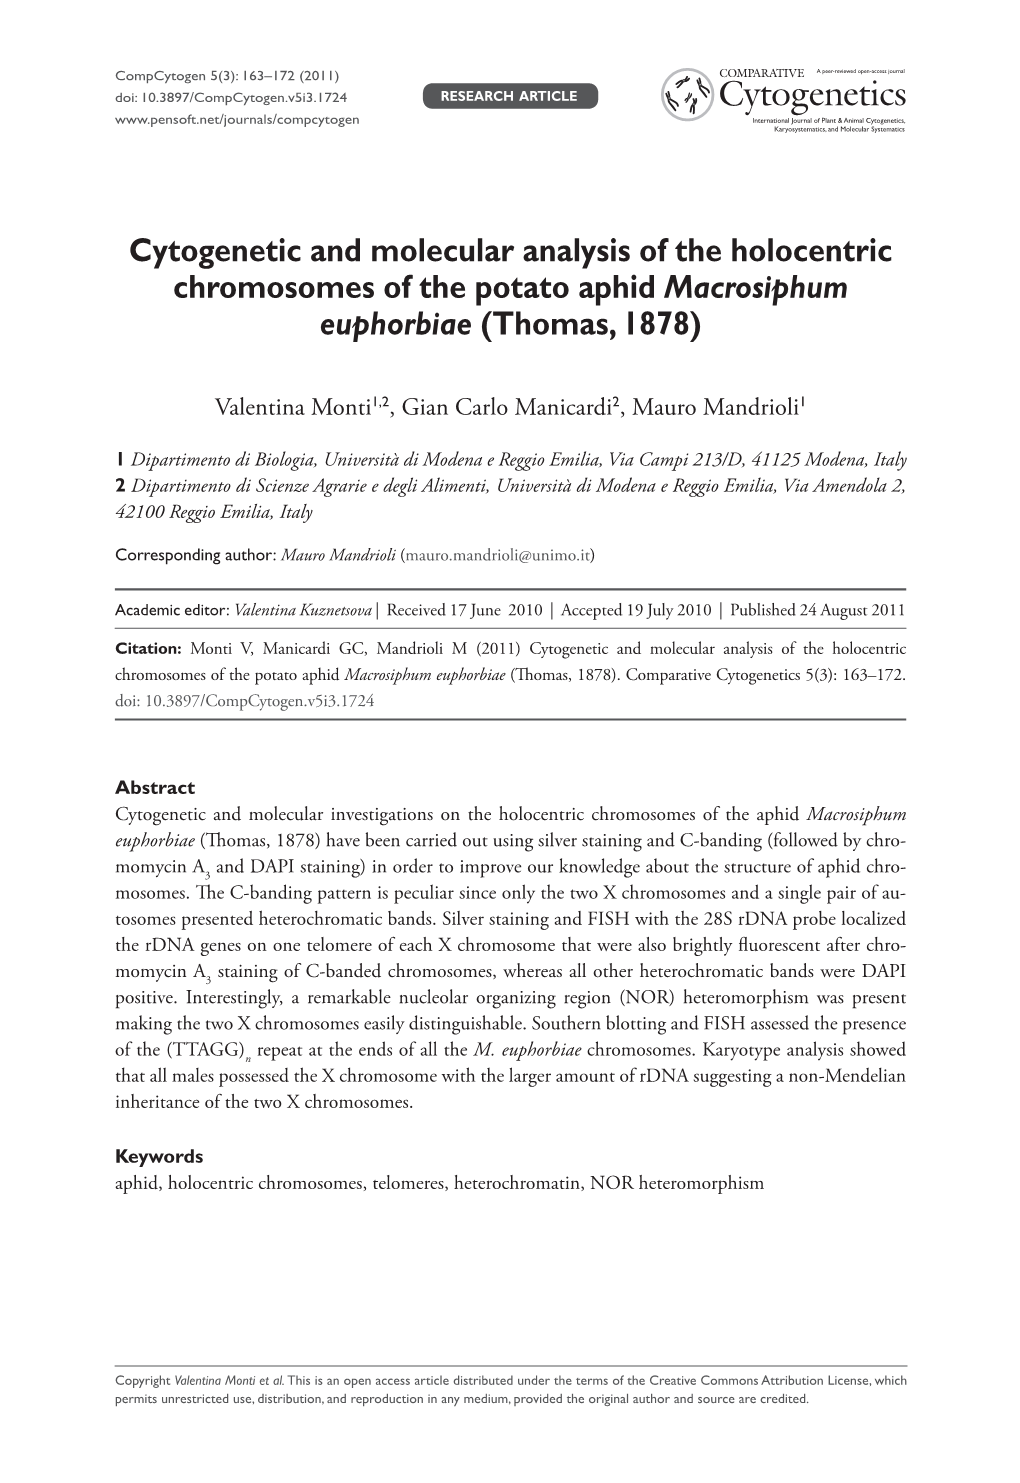 Cytogenetic and Molecular Analysis of the Holocentric Chromosomes of the Potato Aphid Macrosiphum Euphorbiae (Thomas, 1878)